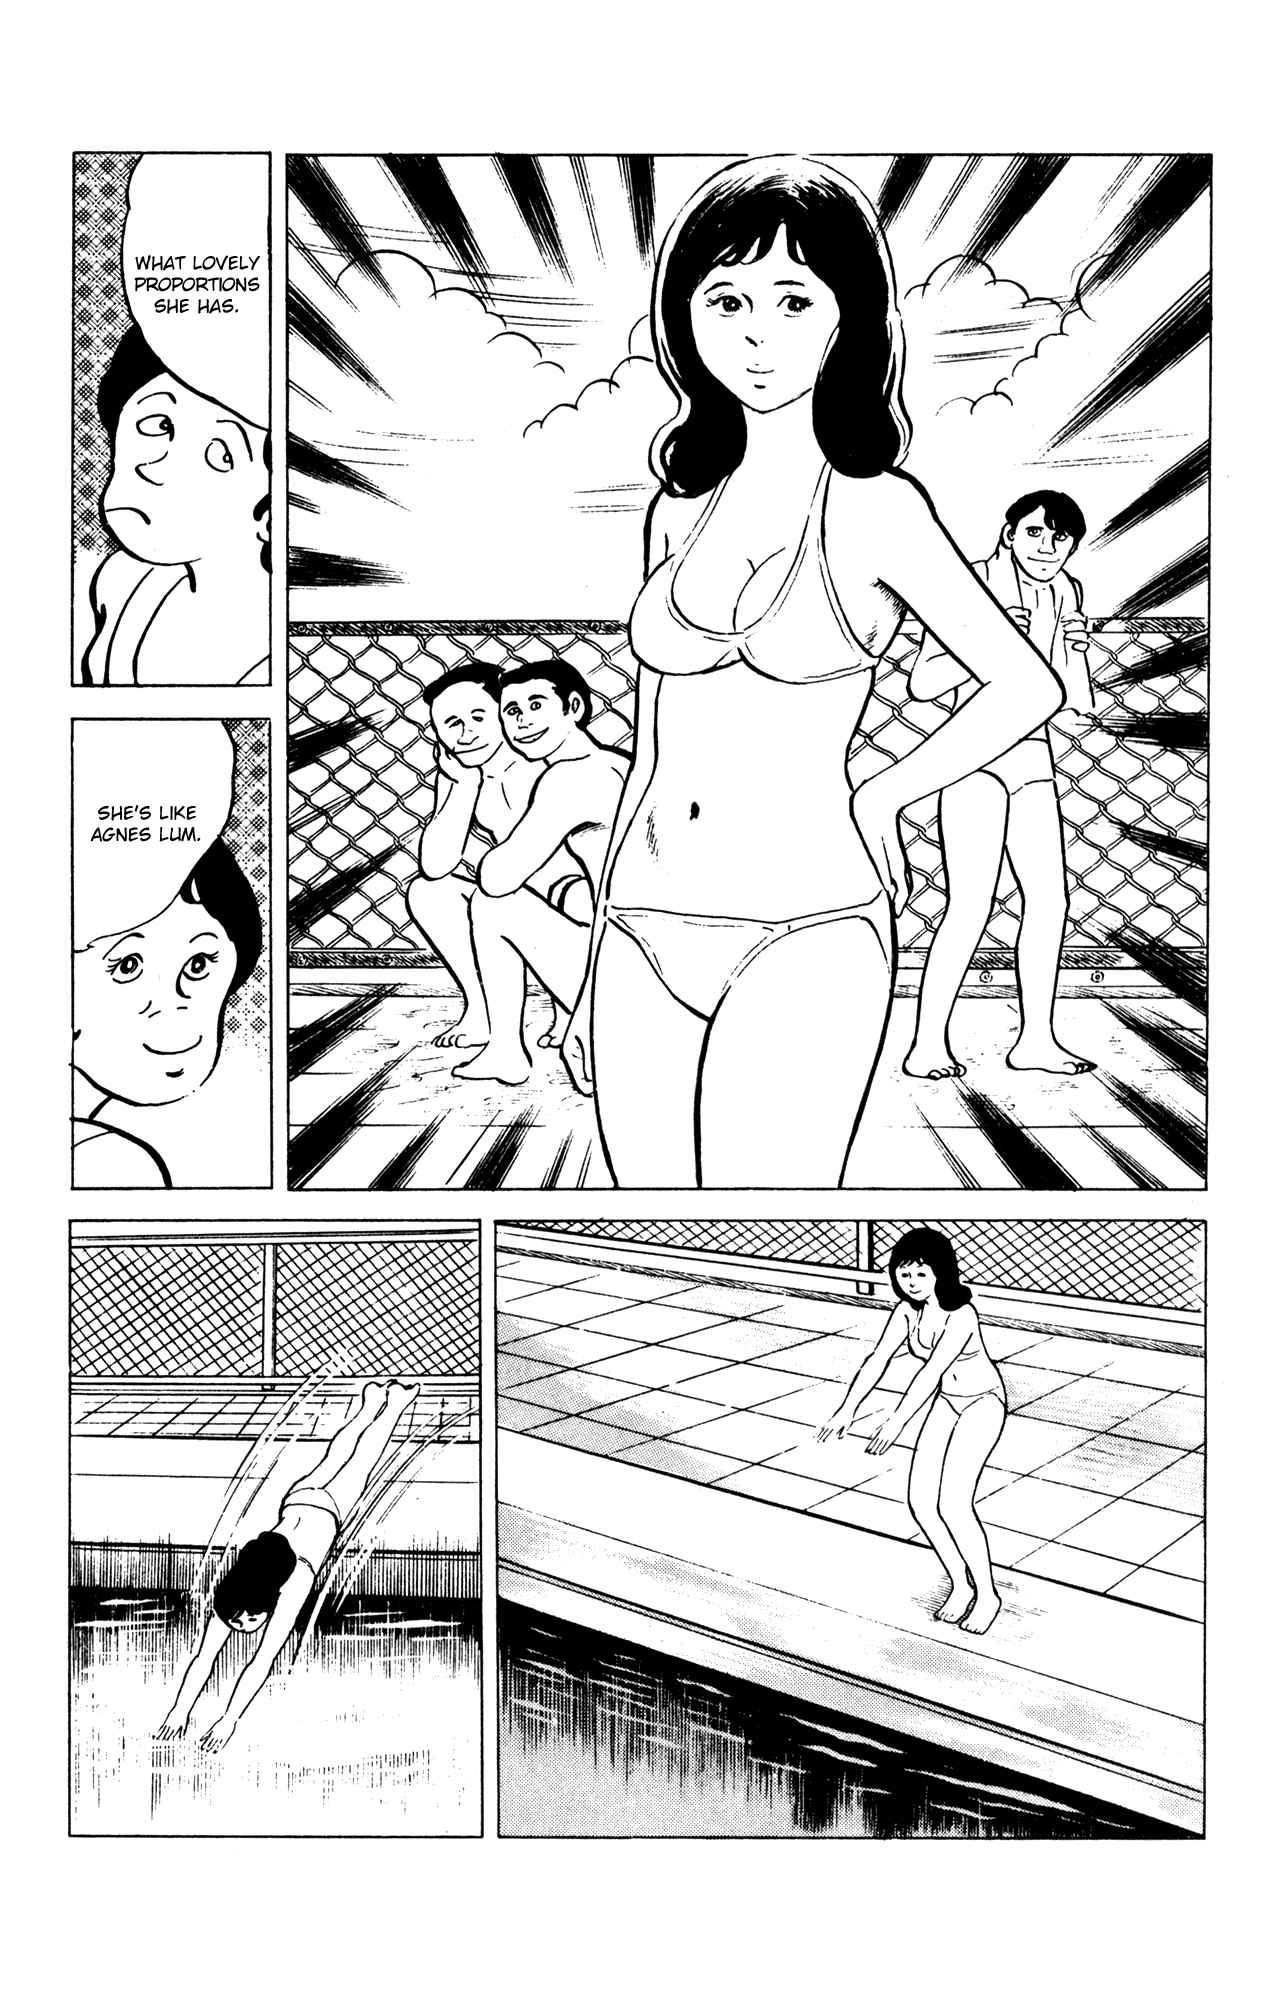 Eko Eko Azarak Vol. 6 Ch. 53 The Magic Swimsuit